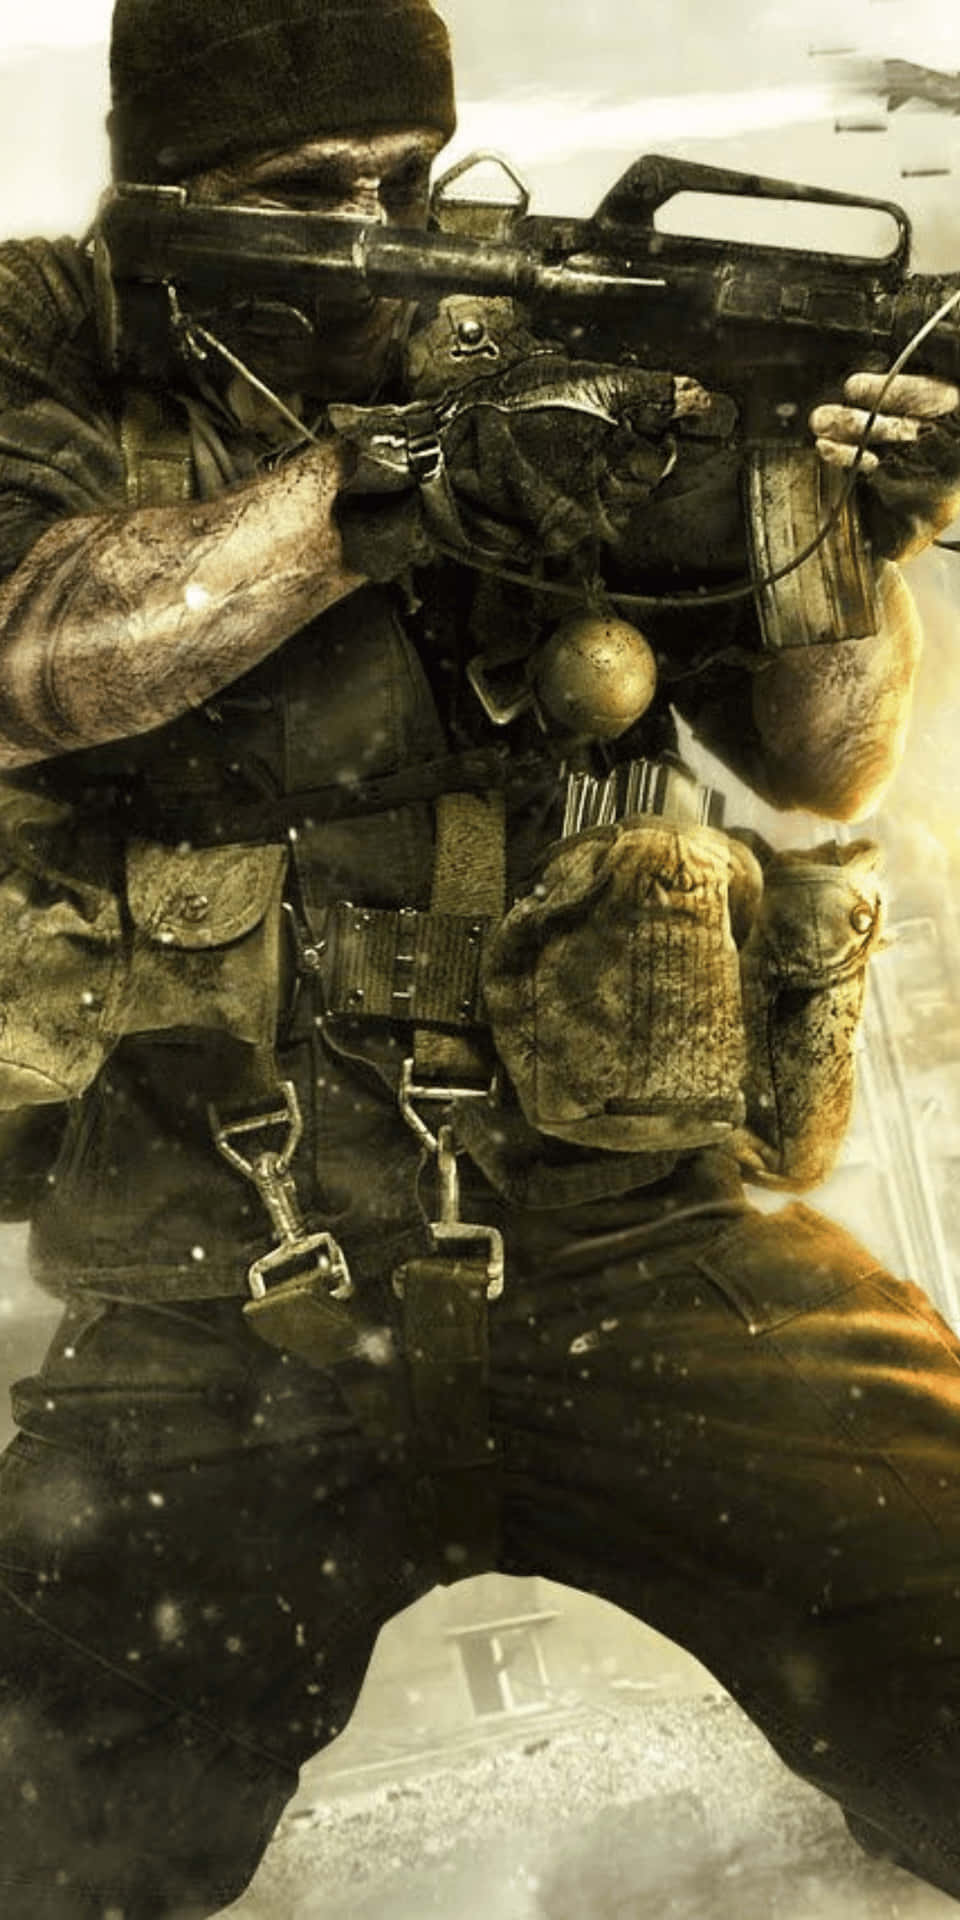 Russelladler Pixel 3 Bakgrundsbild För Call Of Duty Black Ops Cold War.